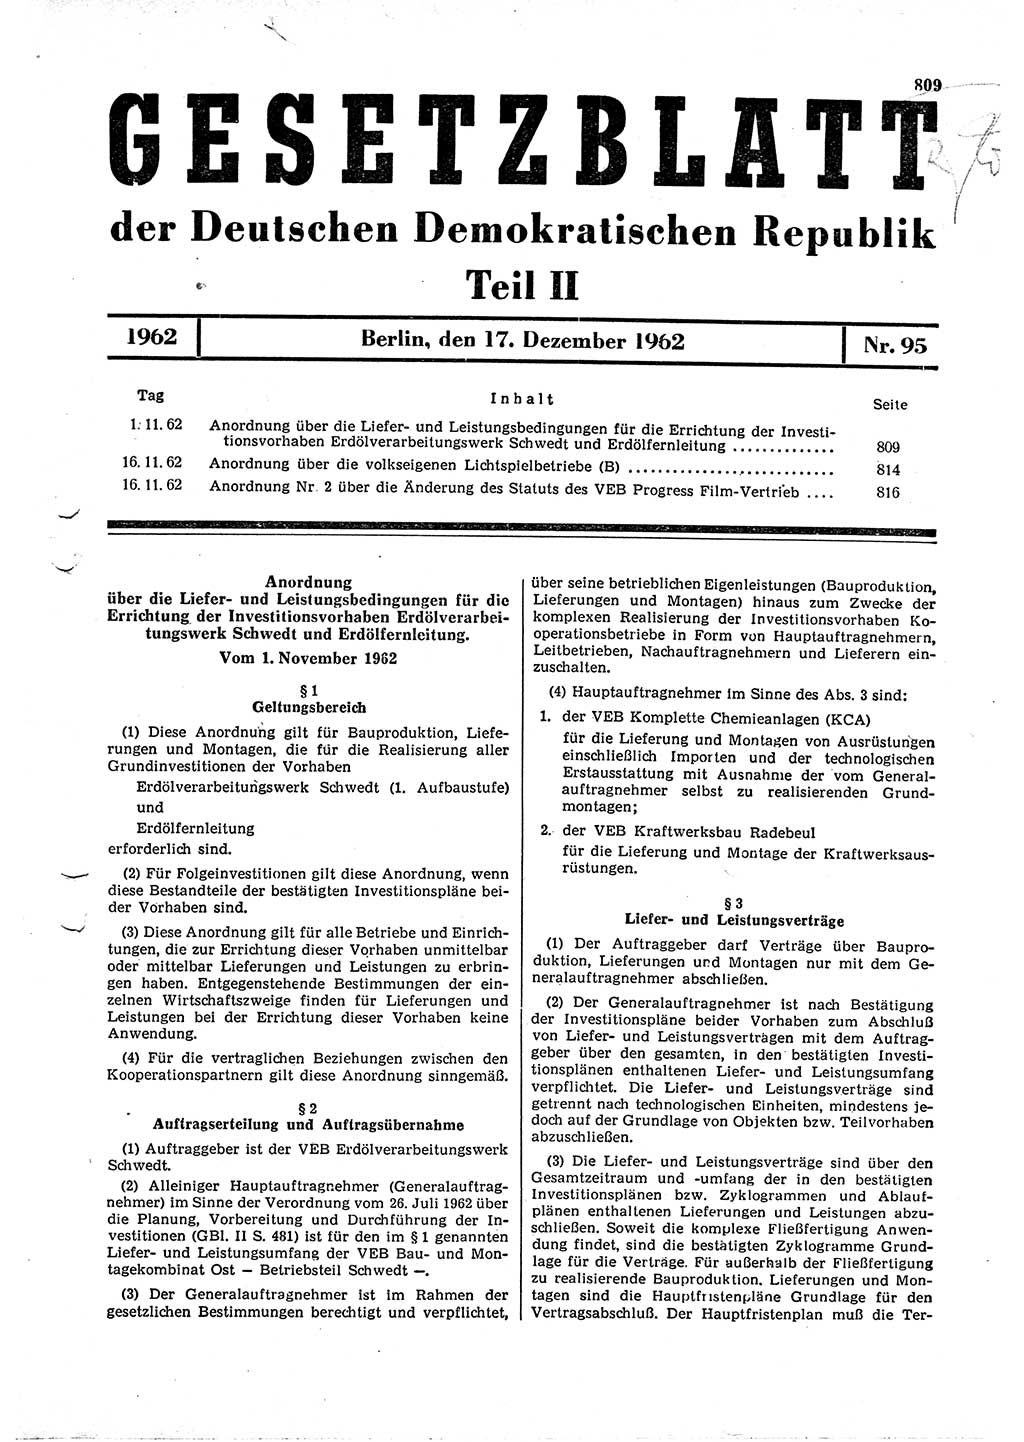 Gesetzblatt (GBl.) der Deutschen Demokratischen Republik (DDR) Teil ⅠⅠ 1962, Seite 809 (GBl. DDR ⅠⅠ 1962, S. 809)